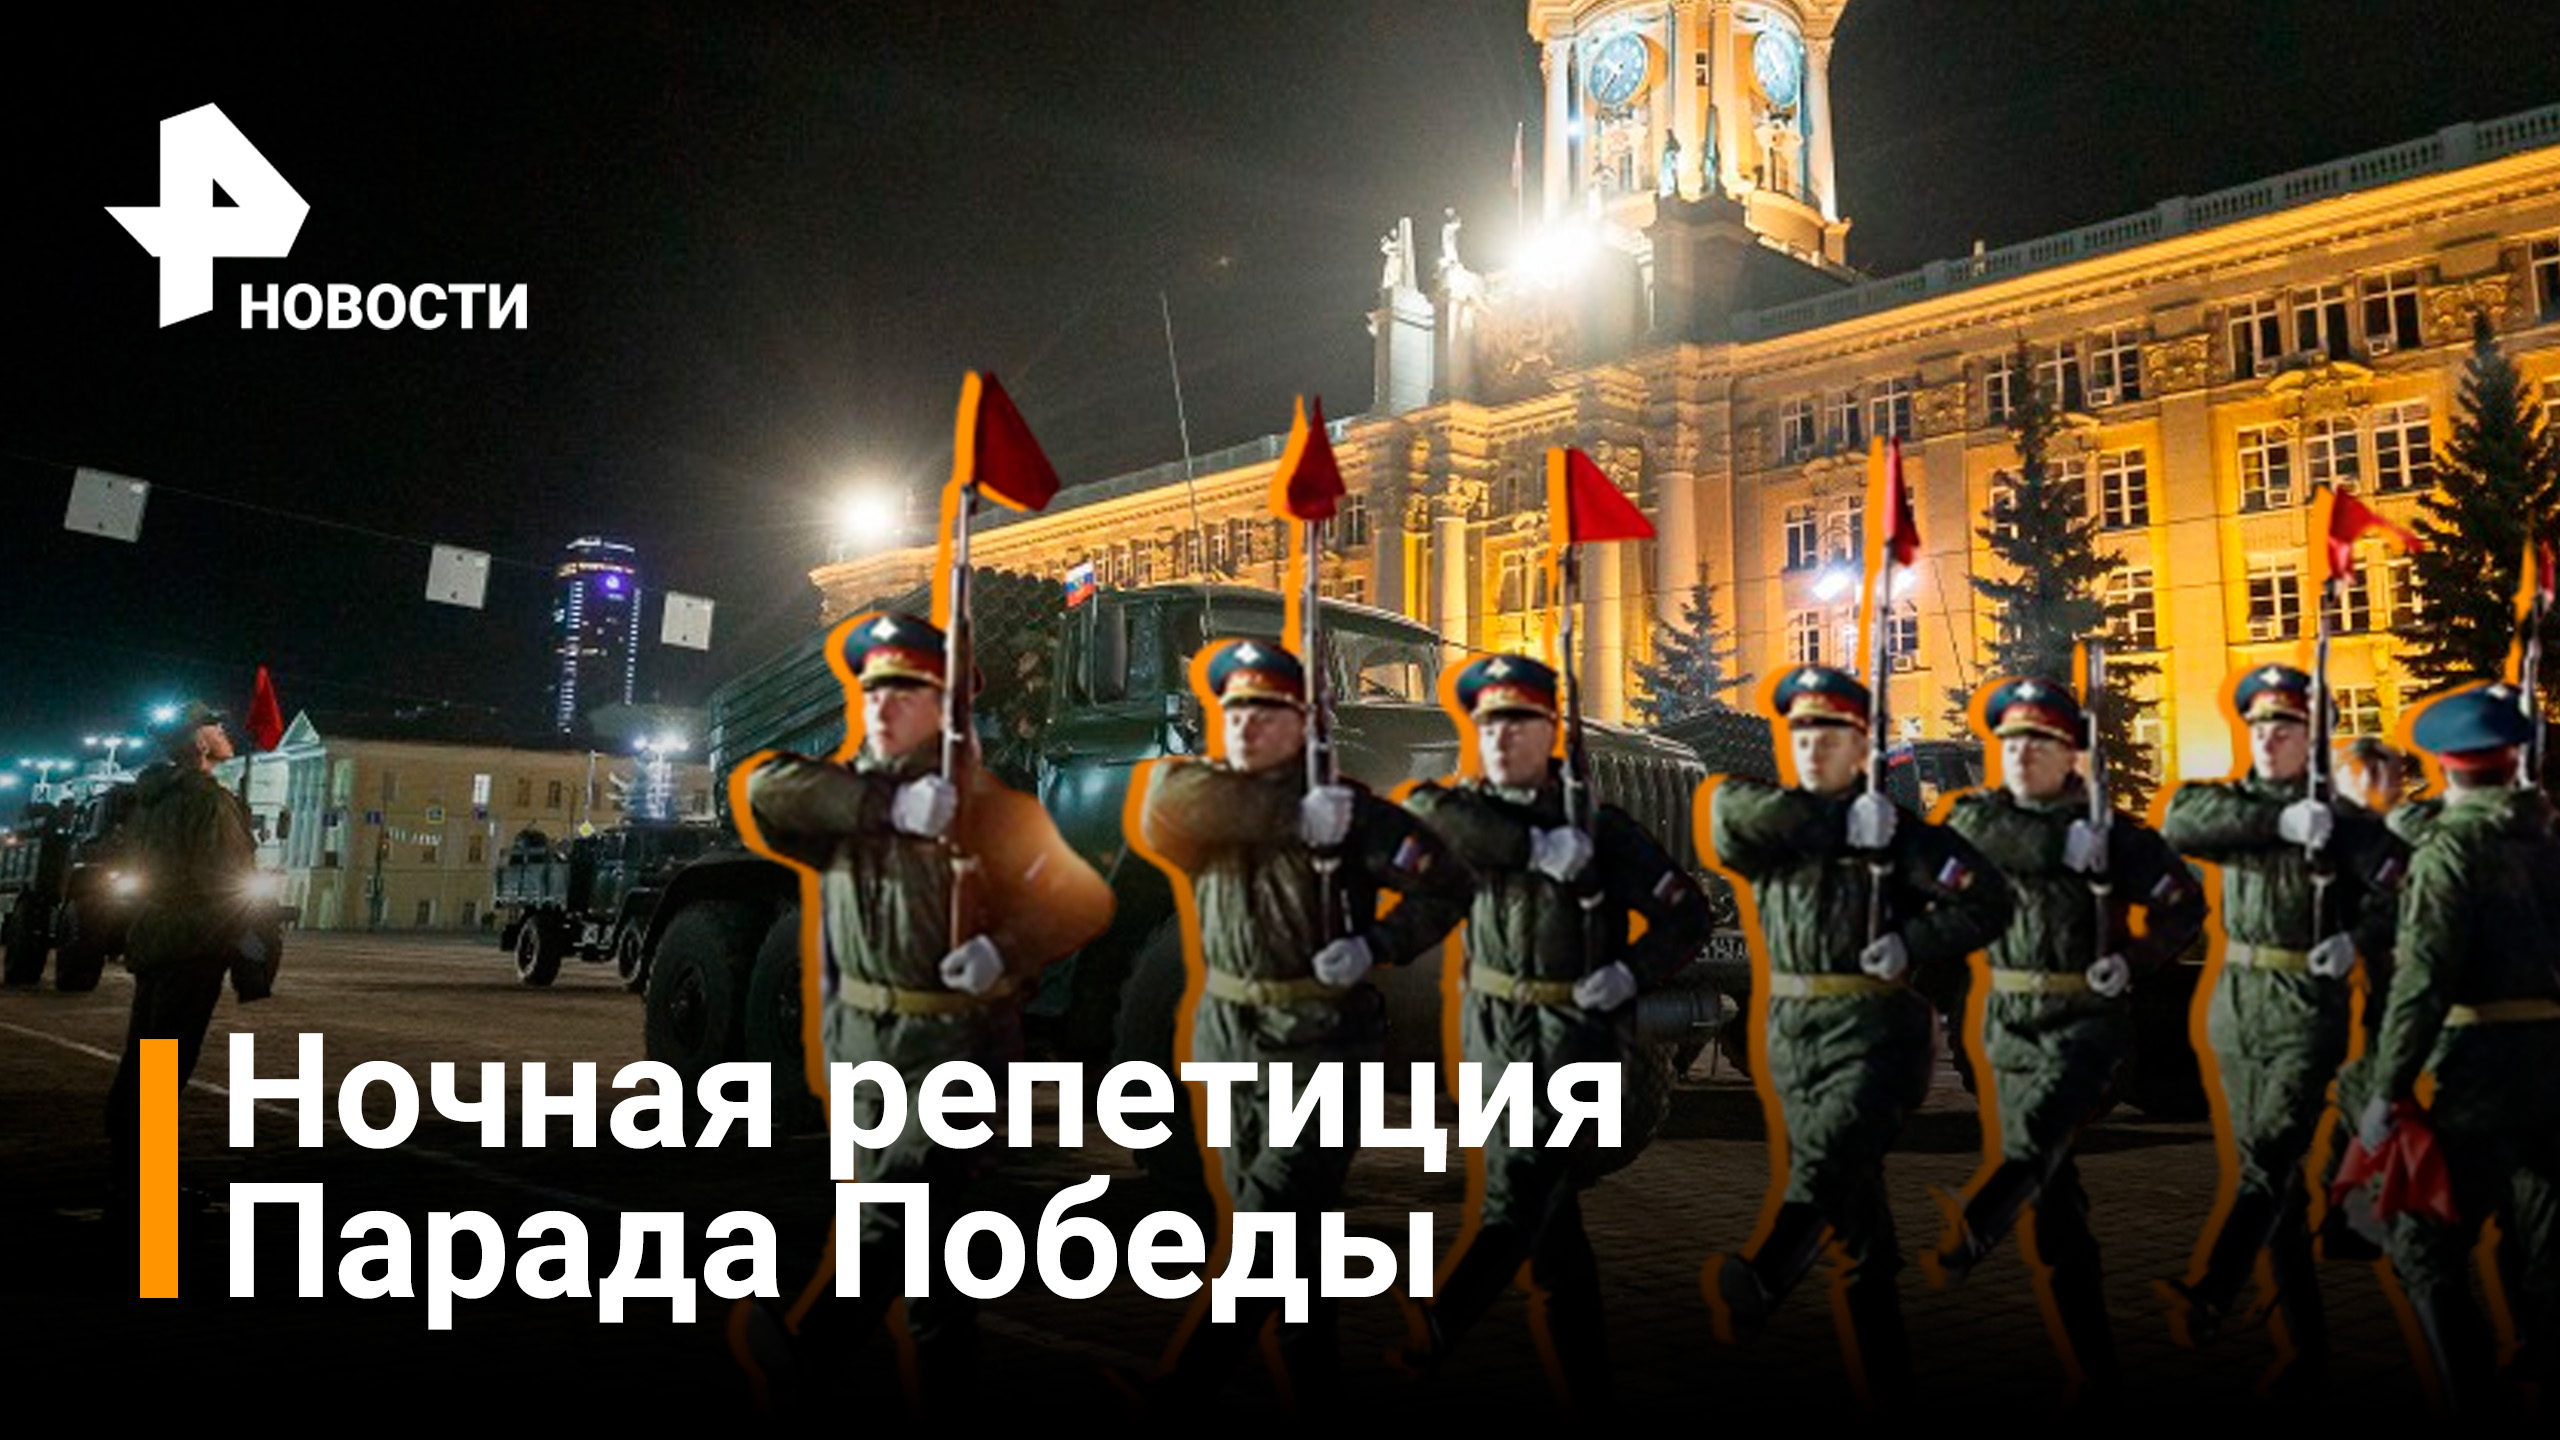 В Москве проходит подготовка к Параду Победы: сегодня ночью состоится первая репетиция / Новости РЕН